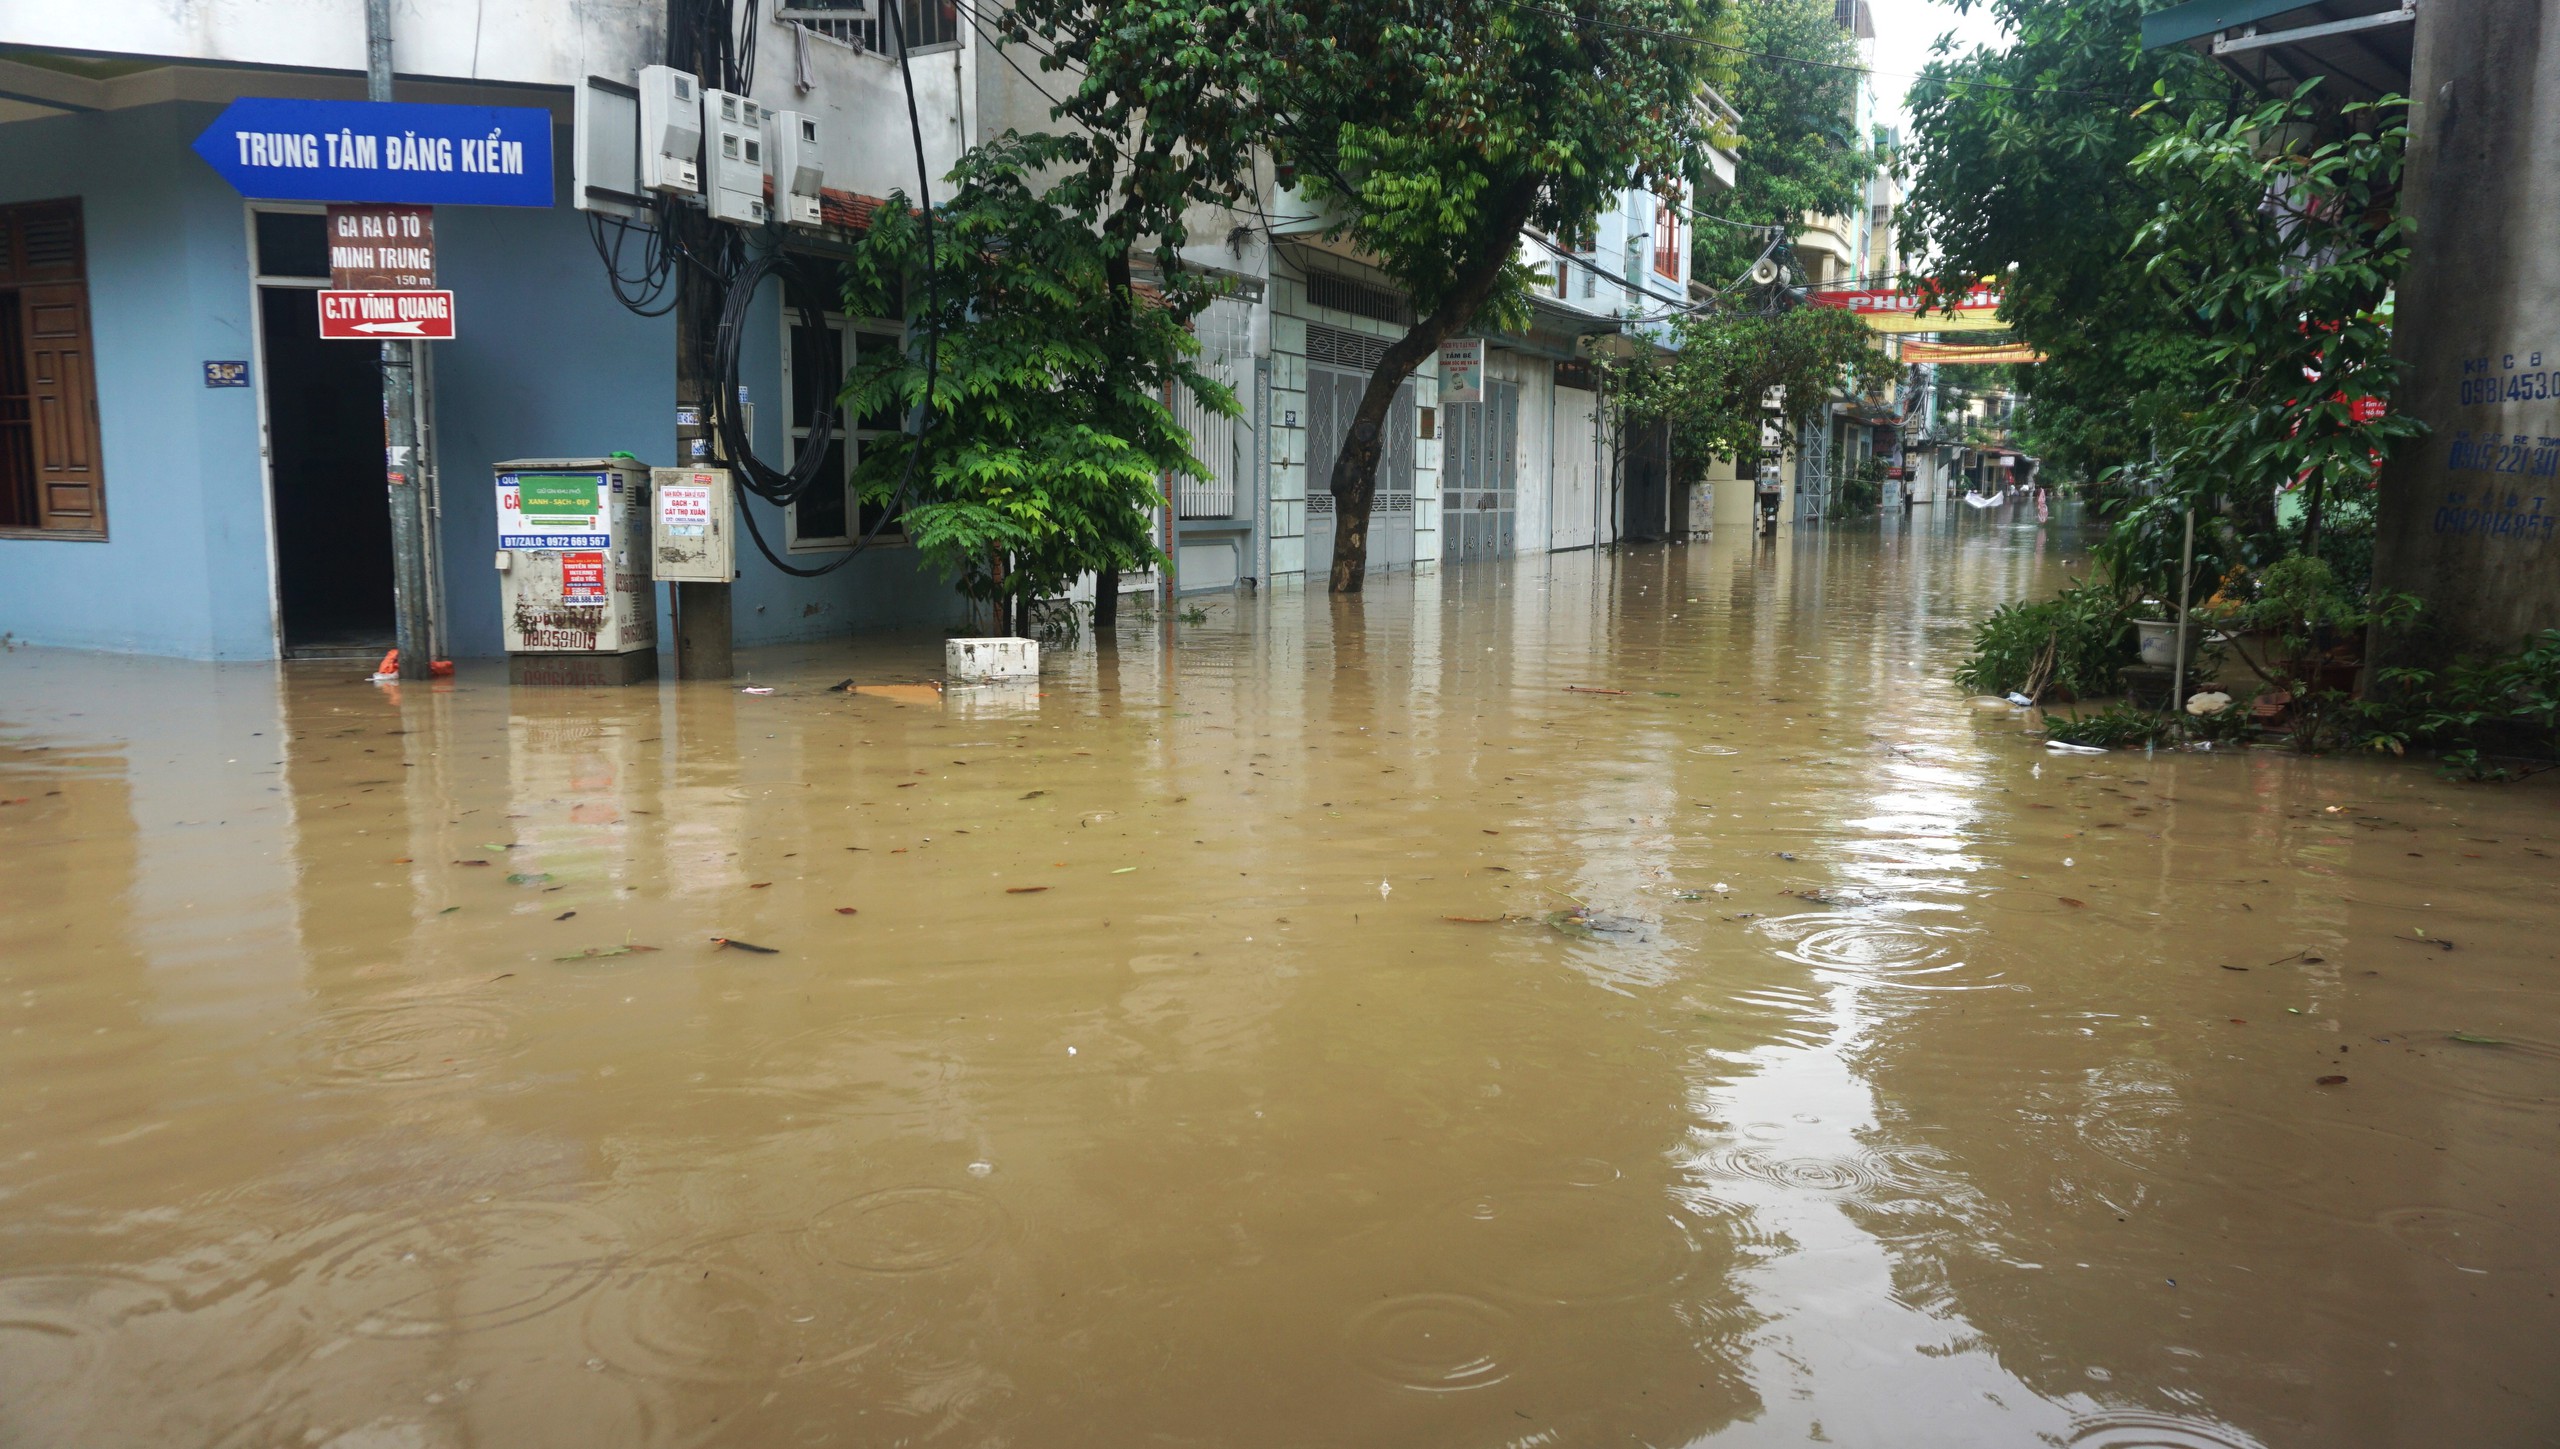 Dù các đơn vị chức năng mới tổ chức nạo vét cống thoát nước khu vực khu phố Phú Thọ 3 nhưng tình trạng ngập vẫn diễn ra